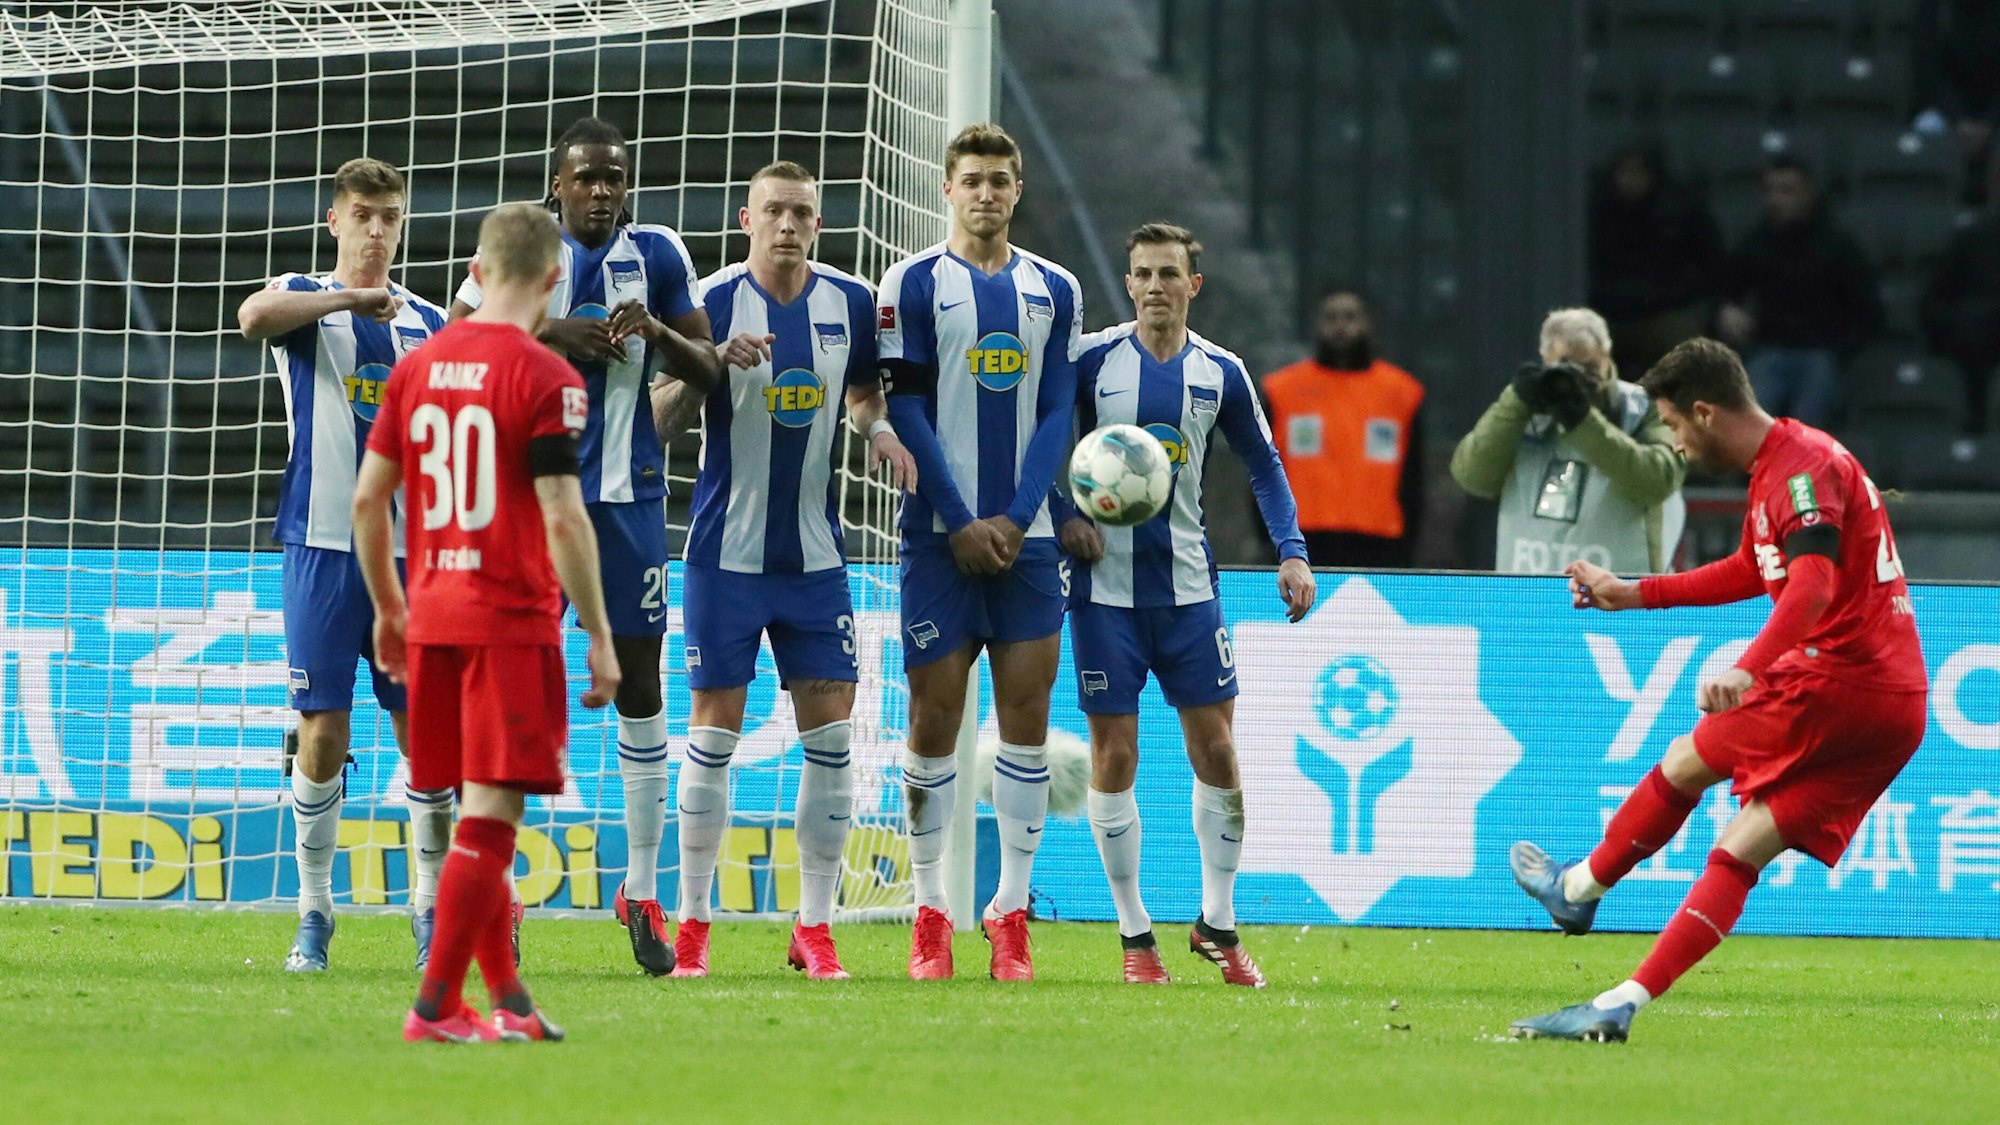 Der ganz in rot gekleidete Profi des 1. FC Köln Mark Uth schießt einen Freistoß über die in Blau-Weiß gekleideten Berliner Spieler, die eine Mauer gebildet haben. Im Hintergrund ist das Tor zu stehen.